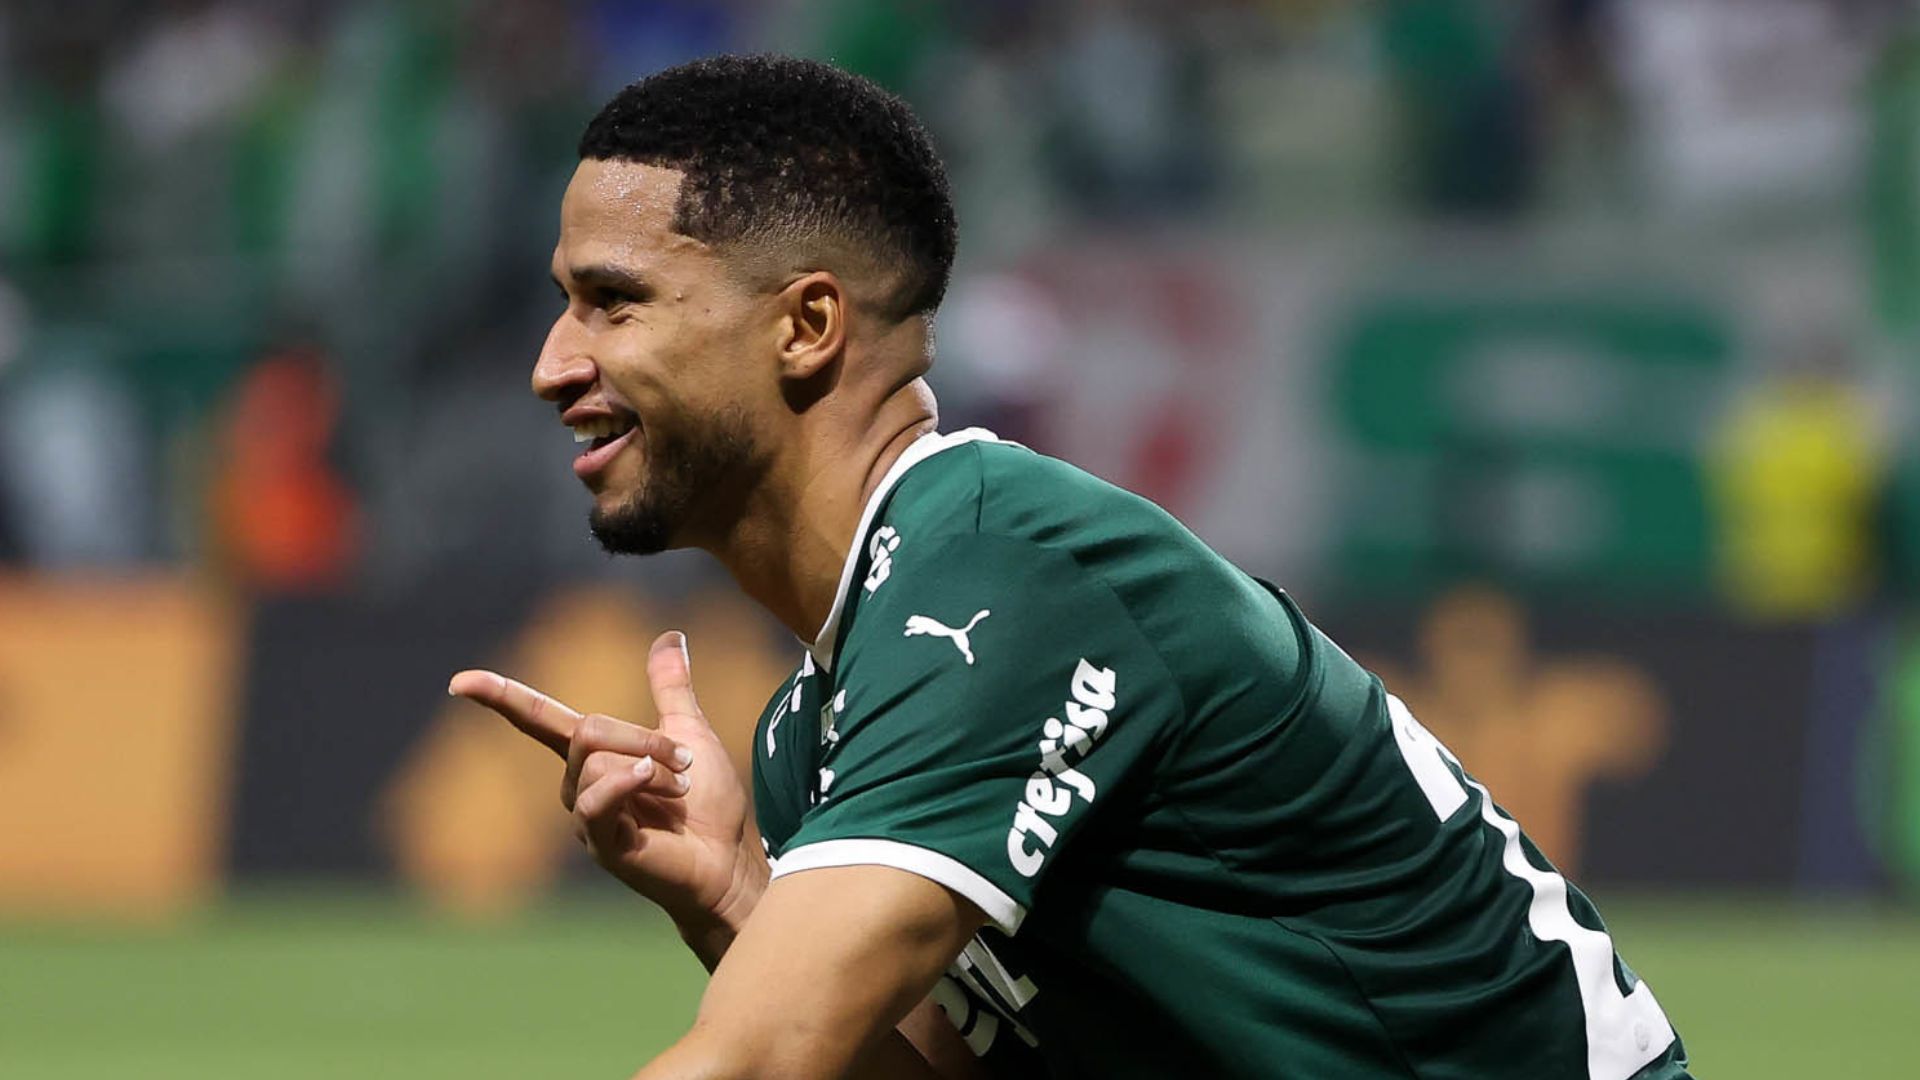 Com gol relâmpago, Palmeiras vence o Ituano no Allianz avança à semifinal  do Paulista - Gazeta Esportiva